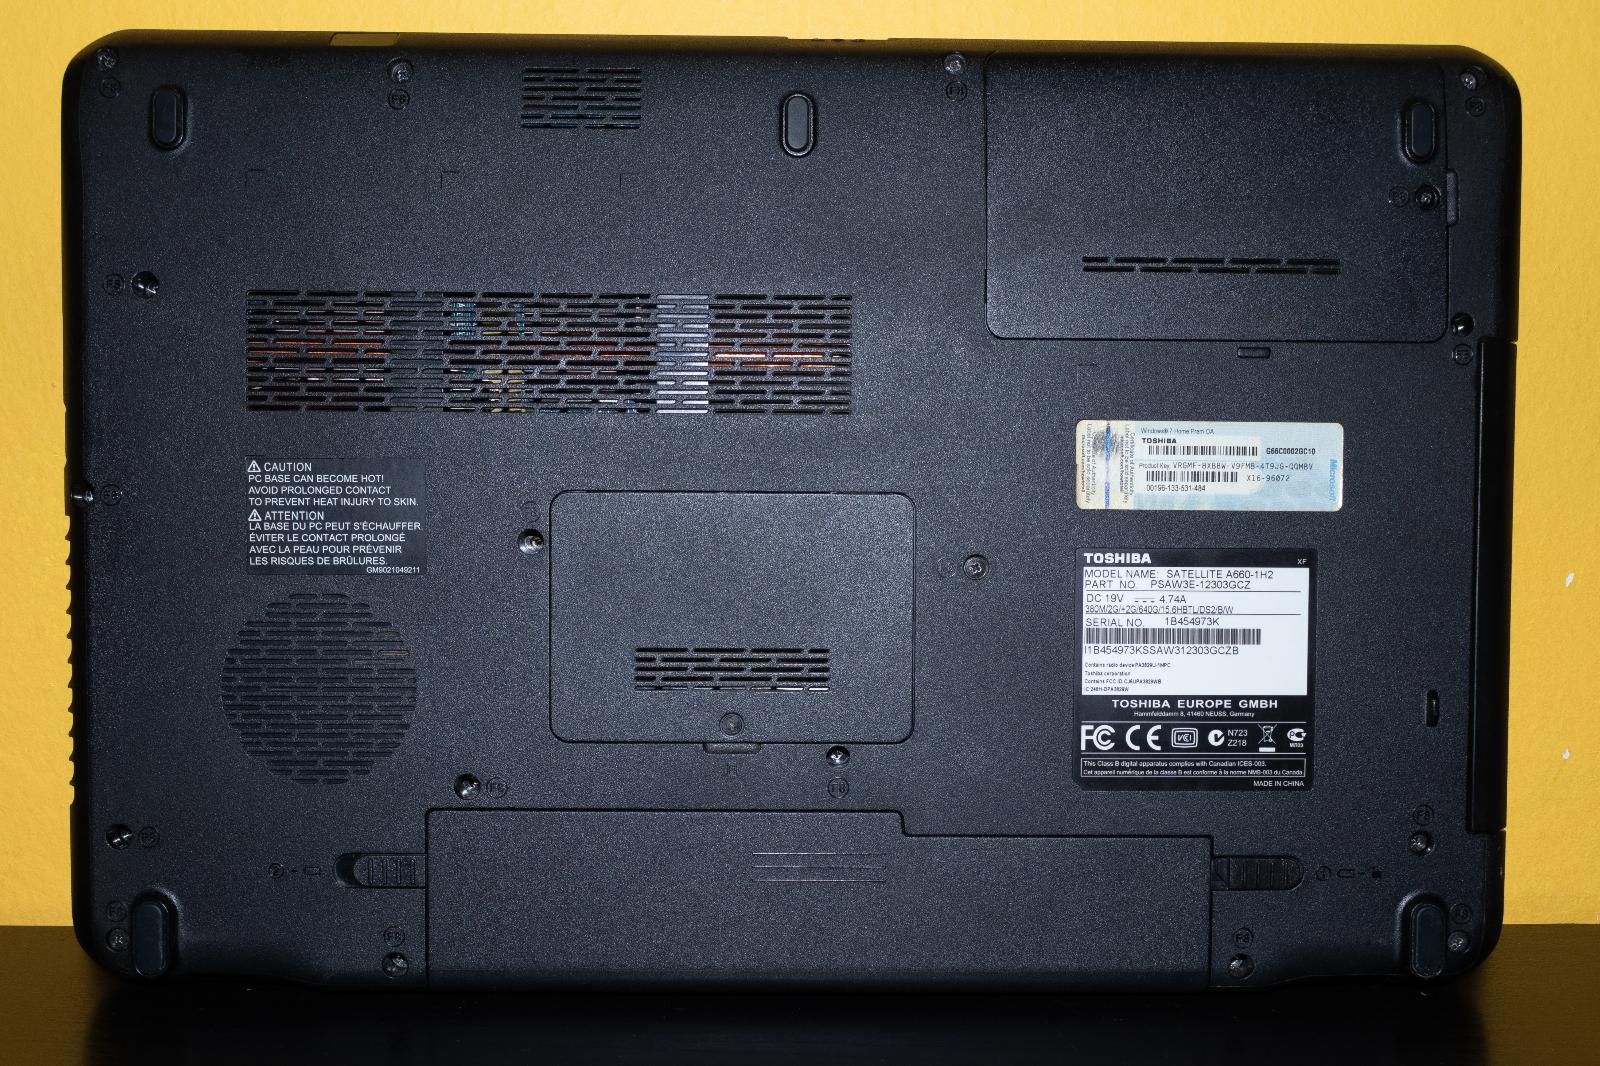 Notebook Toshiba SATELLITE A660-1H2 - Počítače a hry